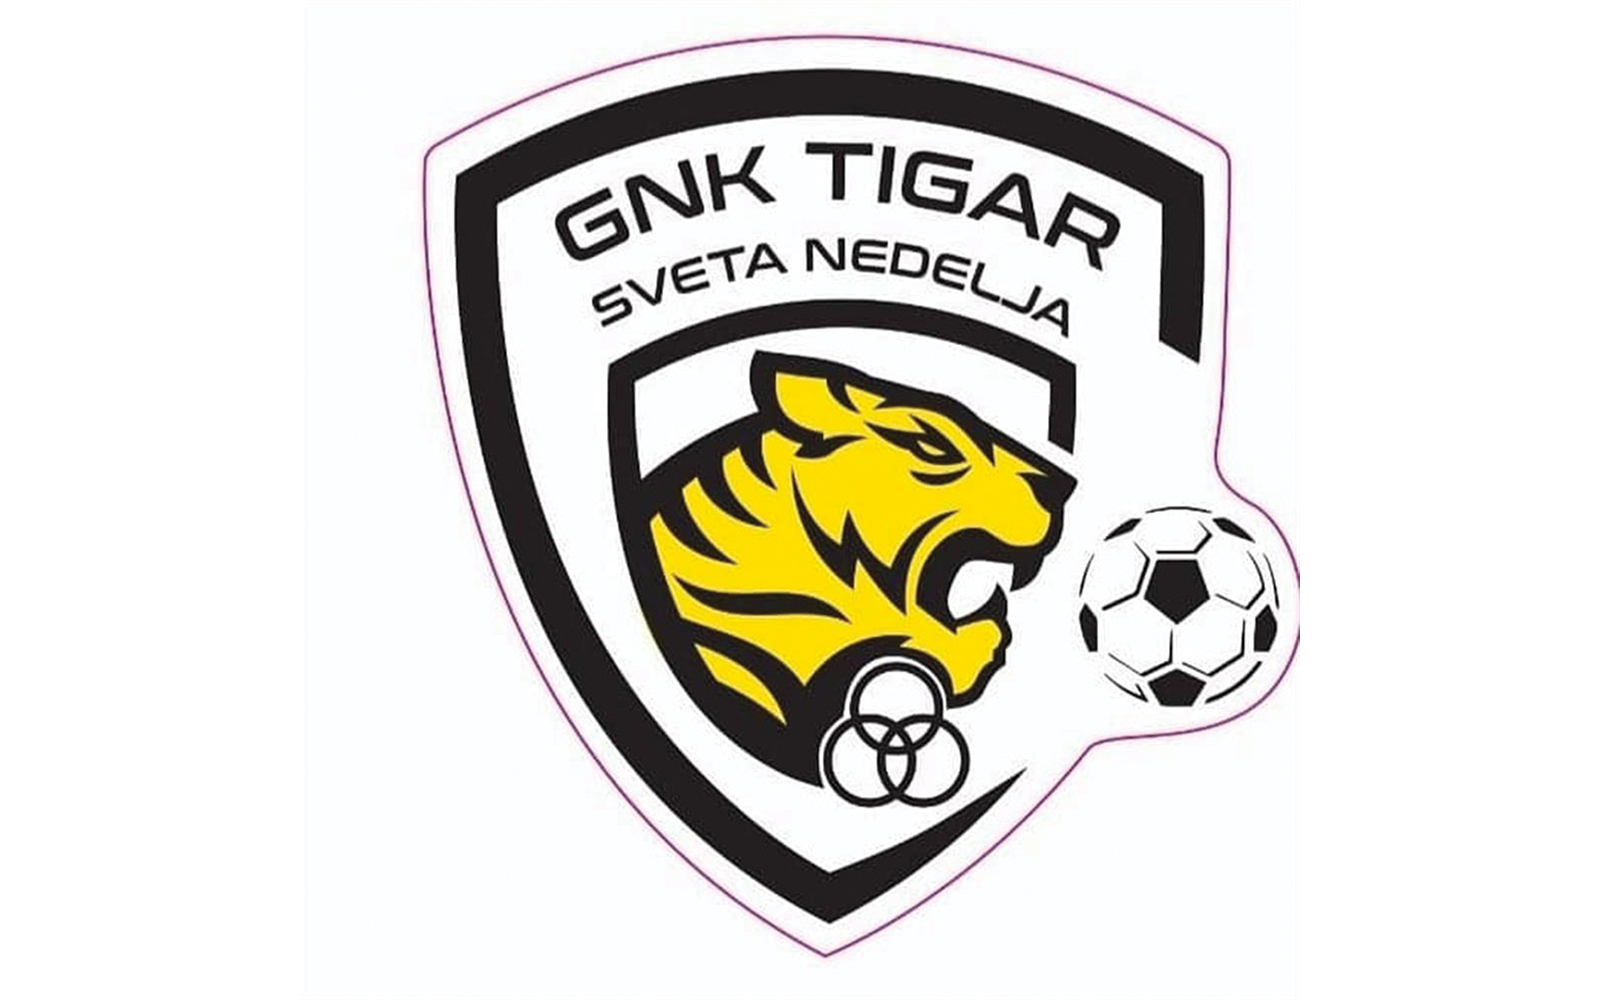 4. nogometna liga središte Zagreb – B - 2. kolo
GNK Tigar Sveta Nedjelja – Gradići 5:1 (1:0)